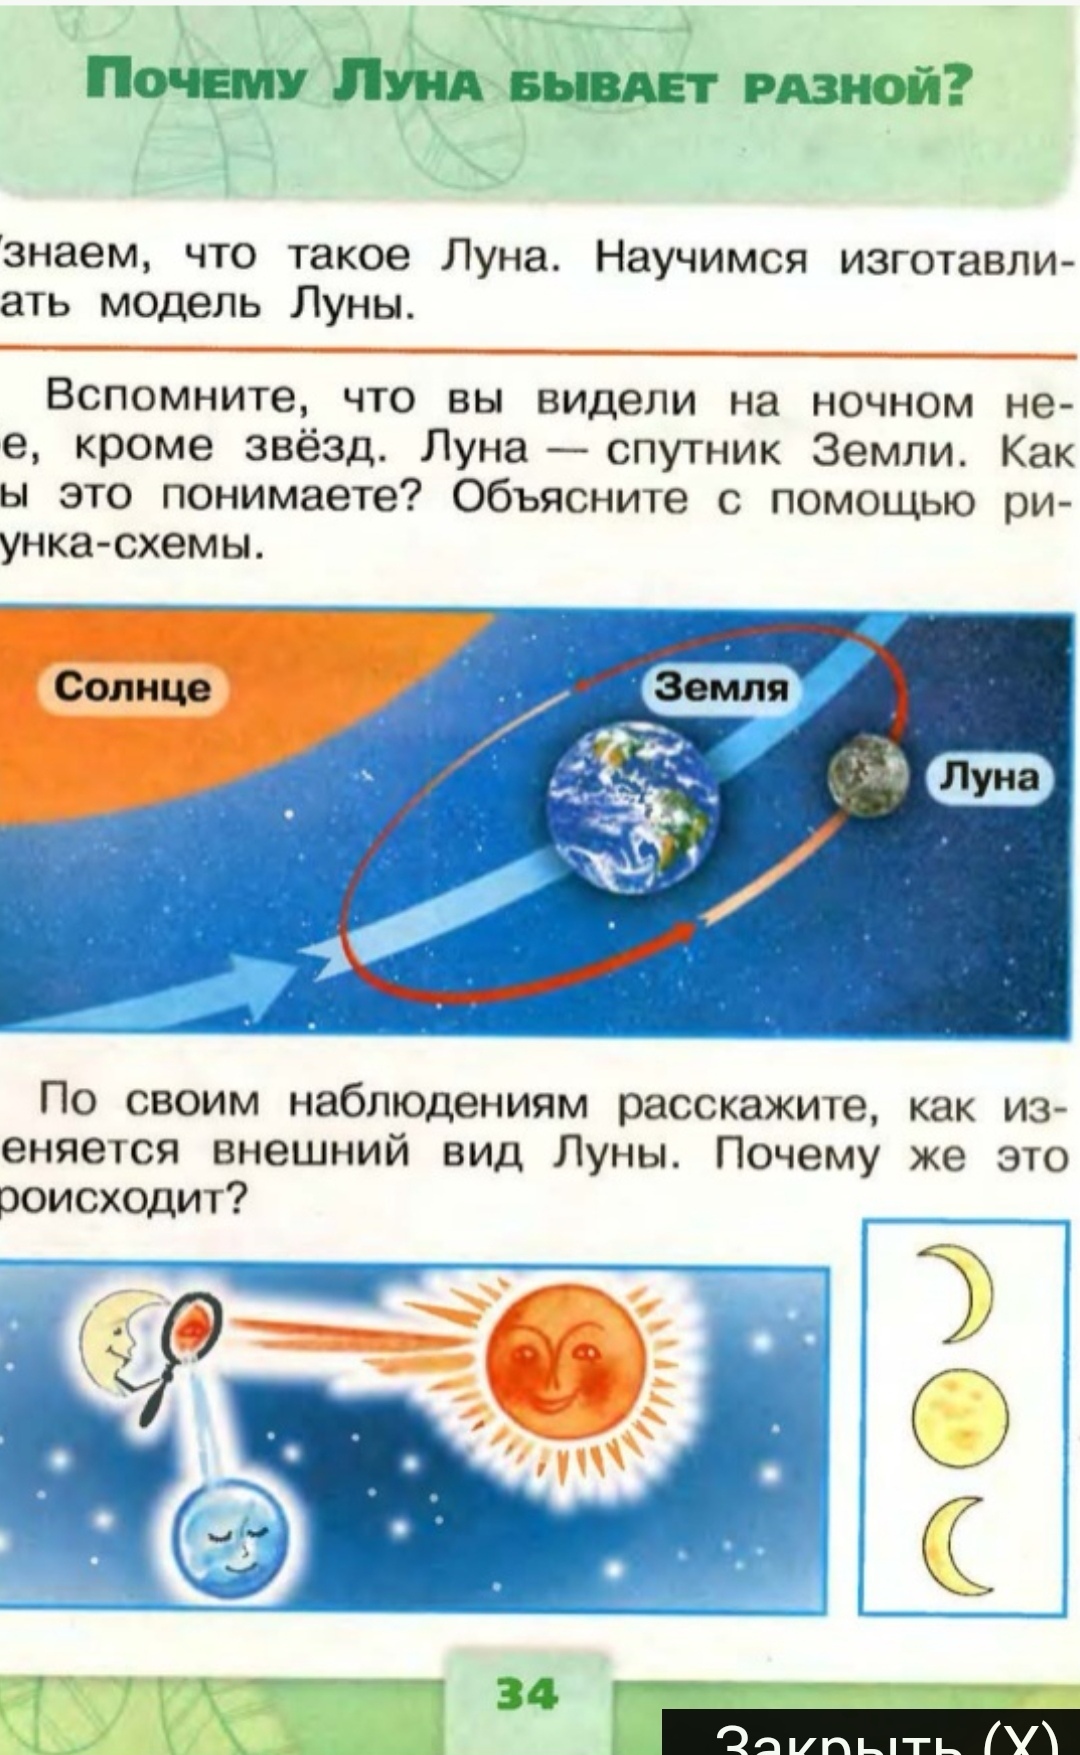 Луна первый класс окружающий мир. Что такое солнце 1 класс окружающий мир. Луна по окружающему миру 1 класс. Луна 1 класс окружающий мир школа России. Почему Луна бывает разной.